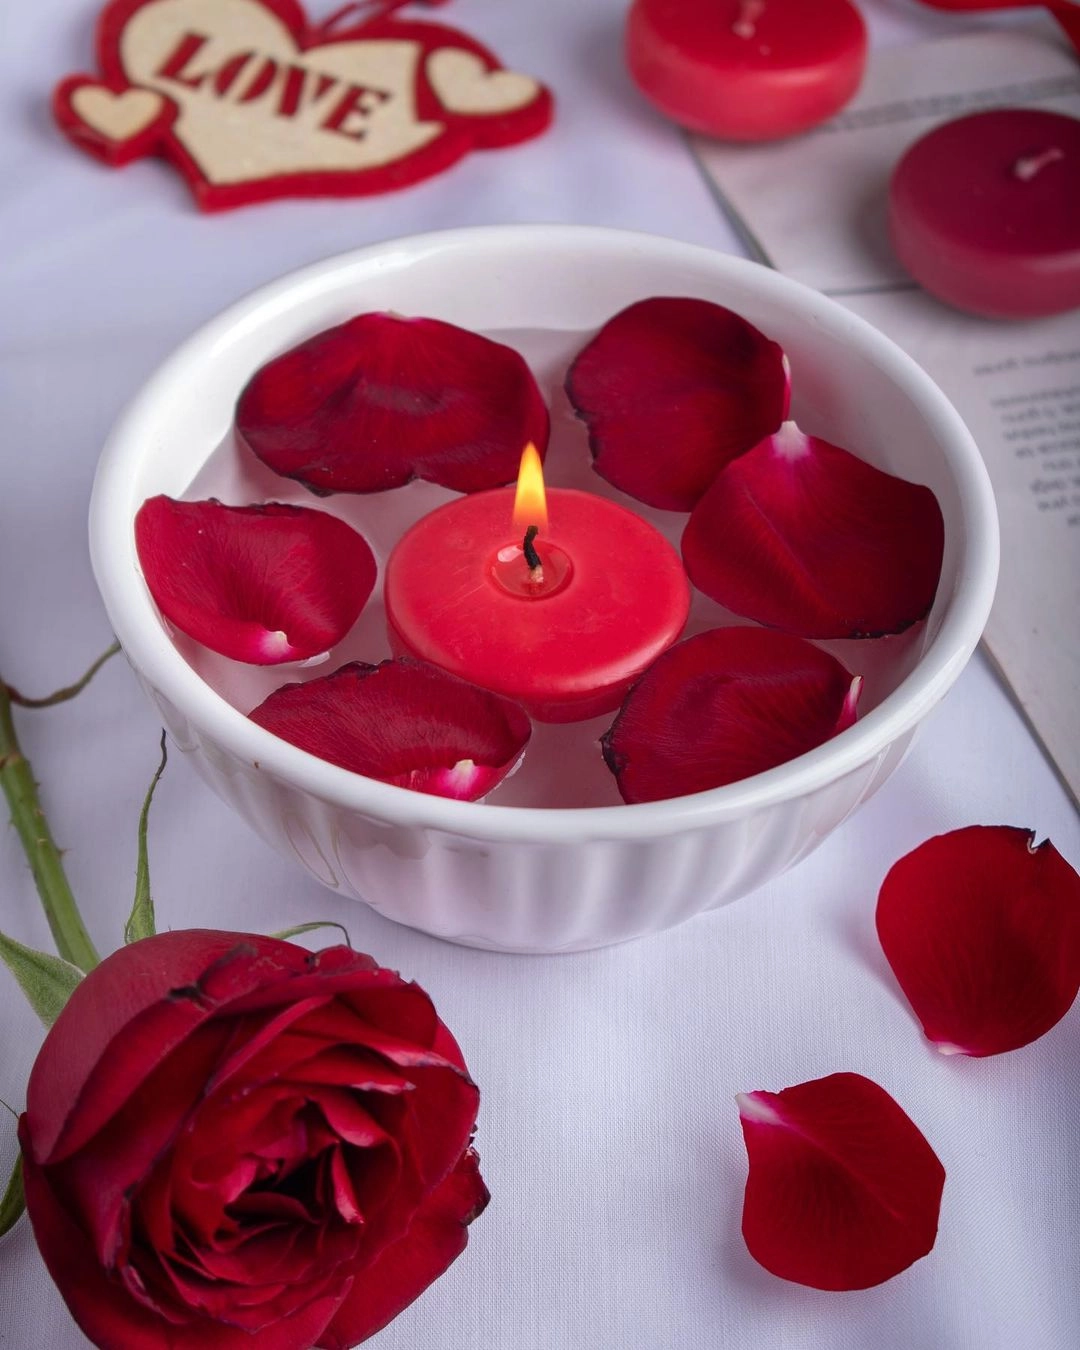 خرید شمع قرمز روآبی برای ولنتاین از برند شمع ایمپریال